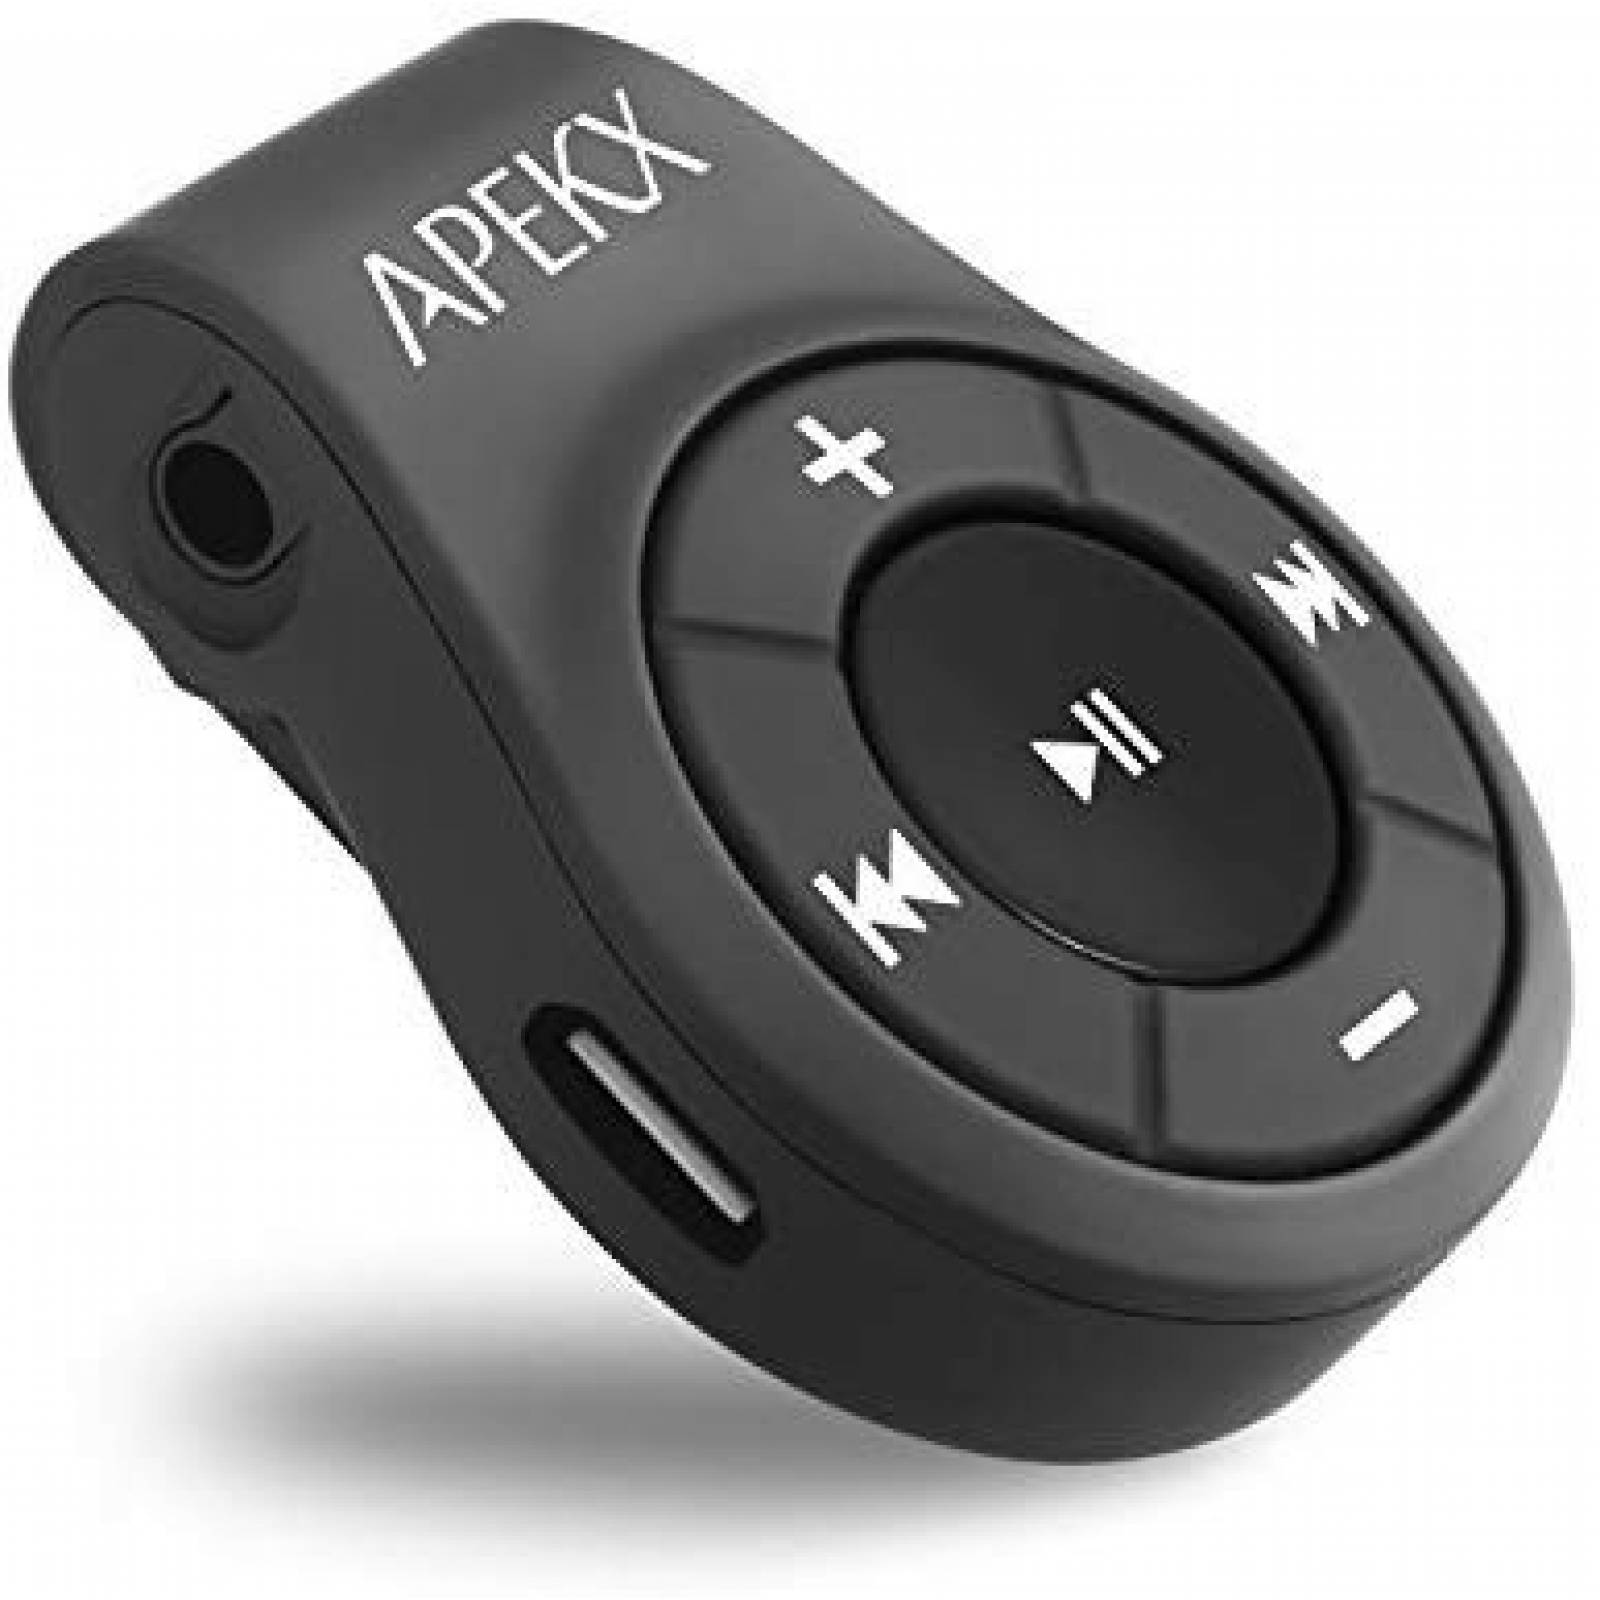 Clip adaptador de audio APEKX inalámbrico bluetooth -negro